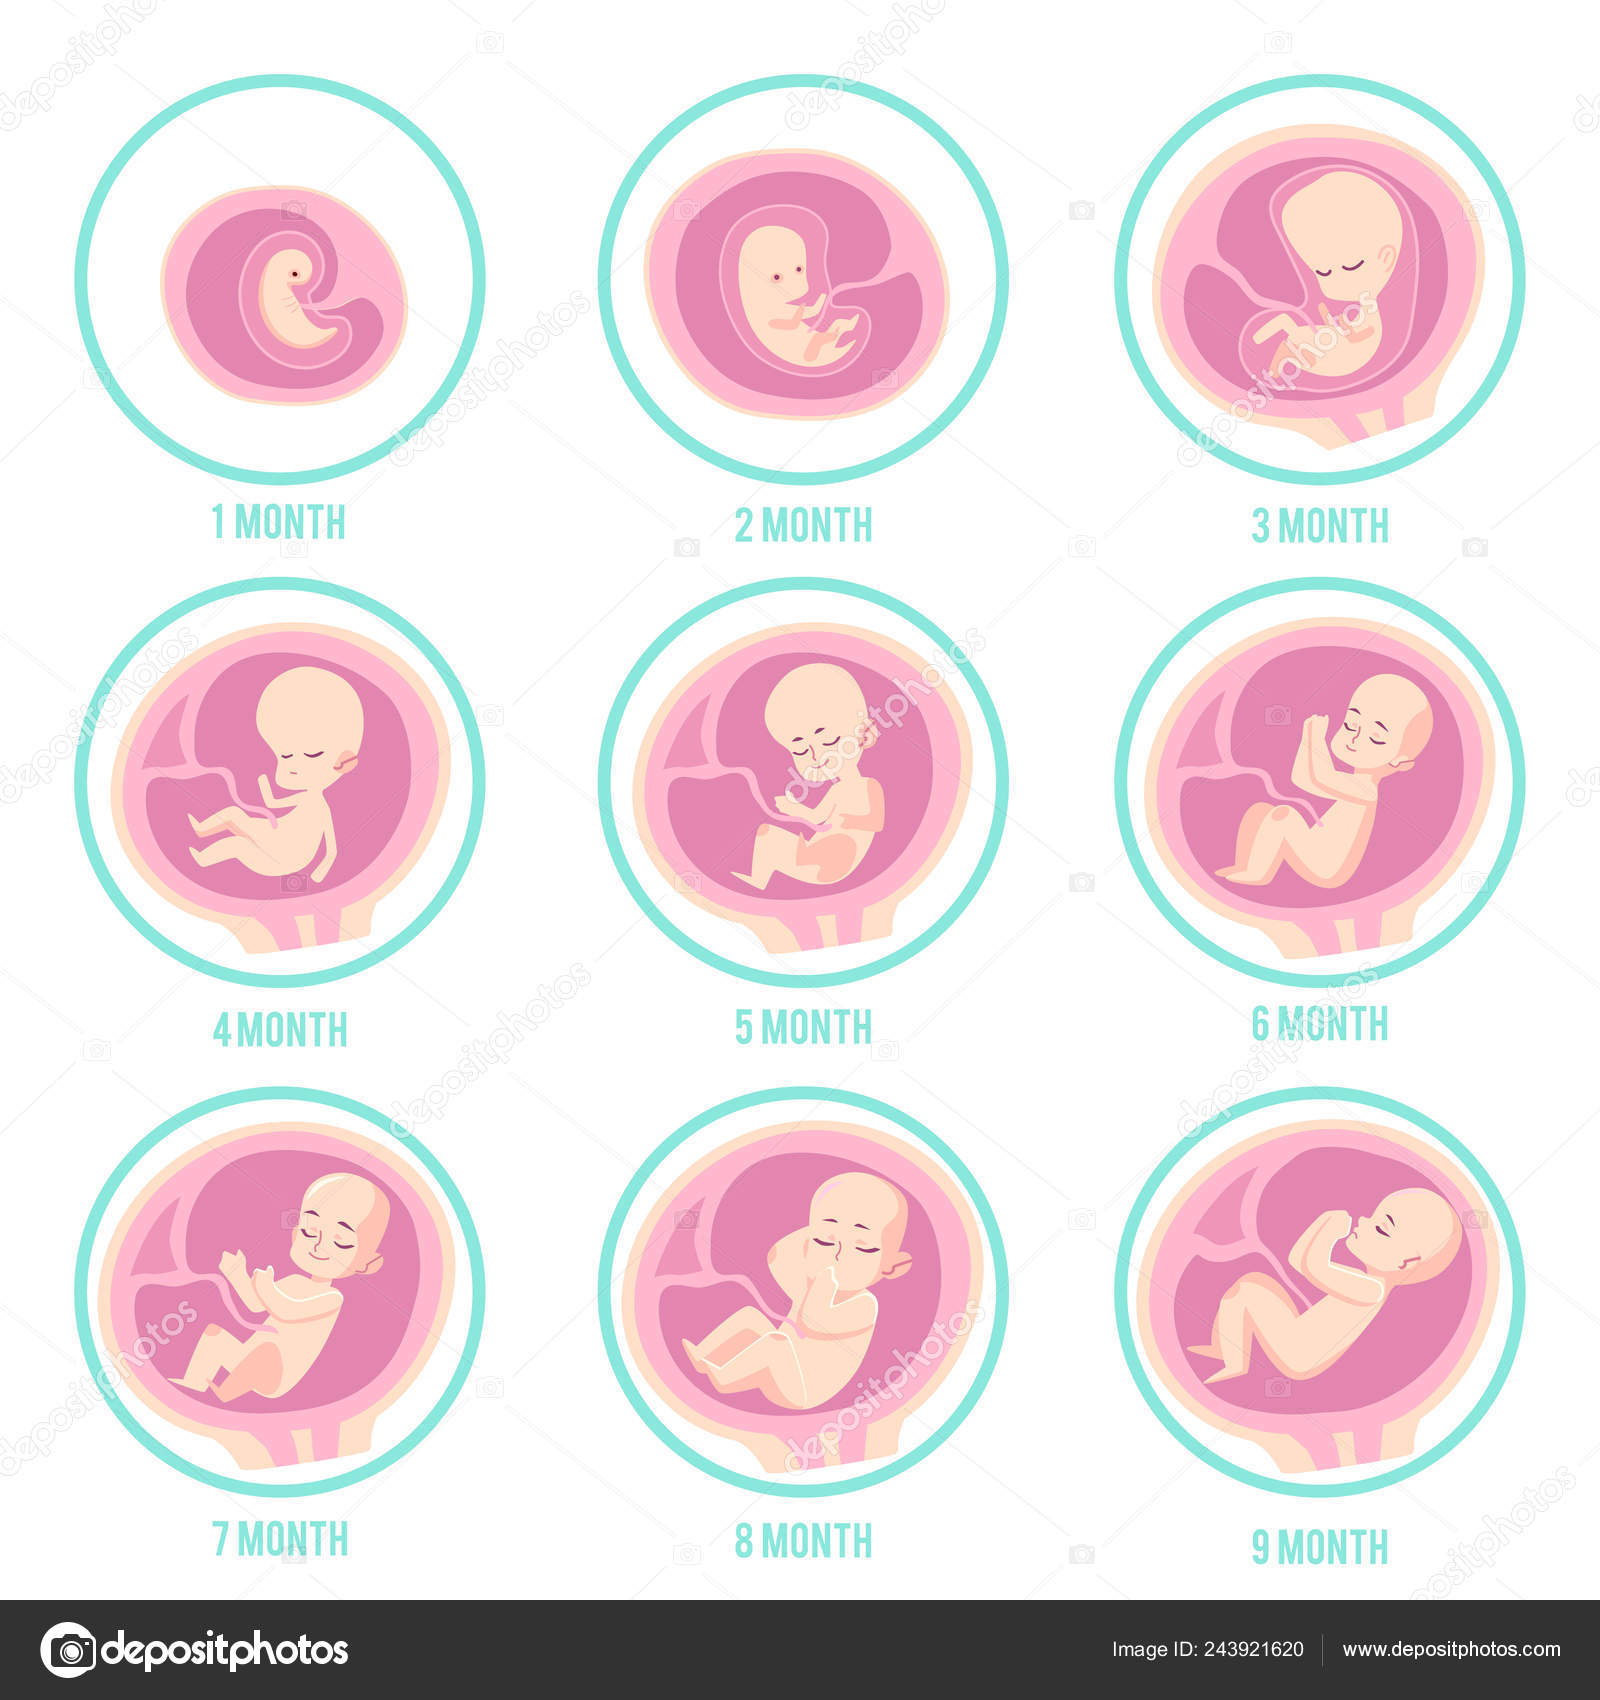 無料ダウンロード 胎児 成長 イラスト イラスト素材